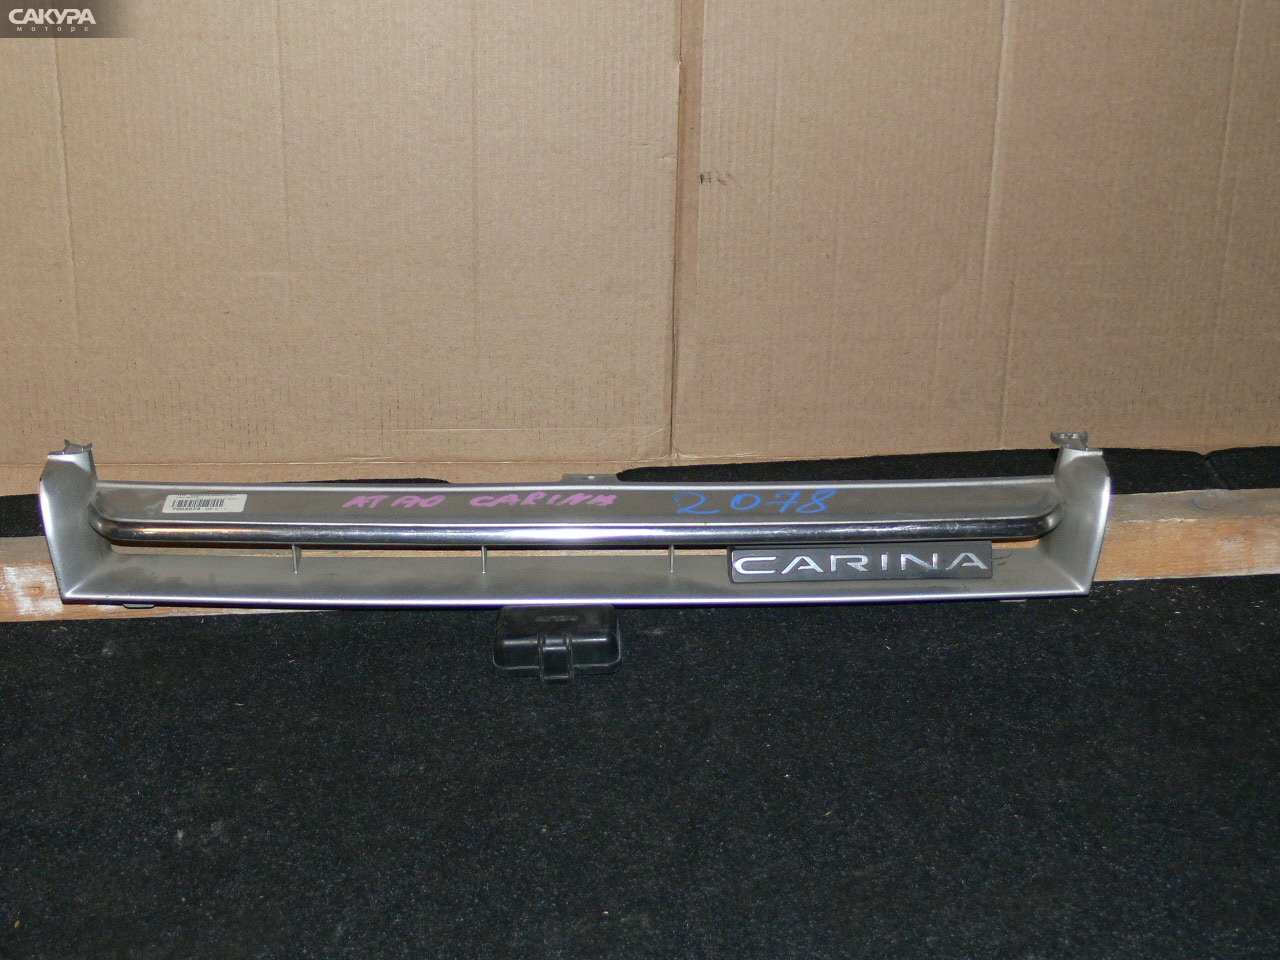 Решетка радиатора Toyota Carina ST170: купить в Сакура Иркутск.